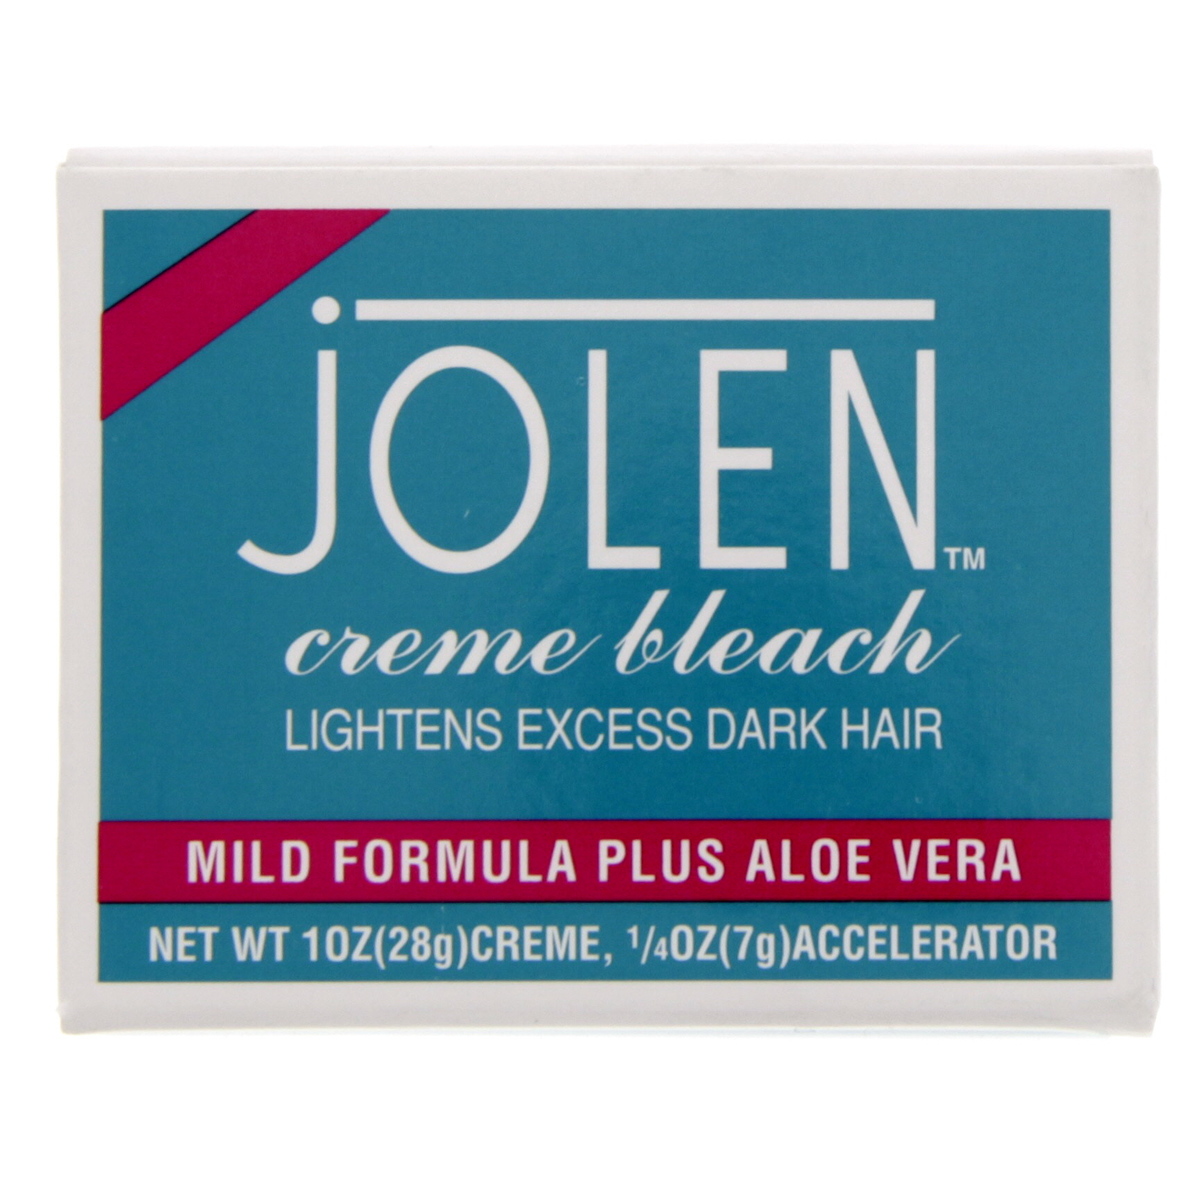 Buy Jolen Cream Bleach Mild Formula Plus Aloe Vera 28g Creme 7g